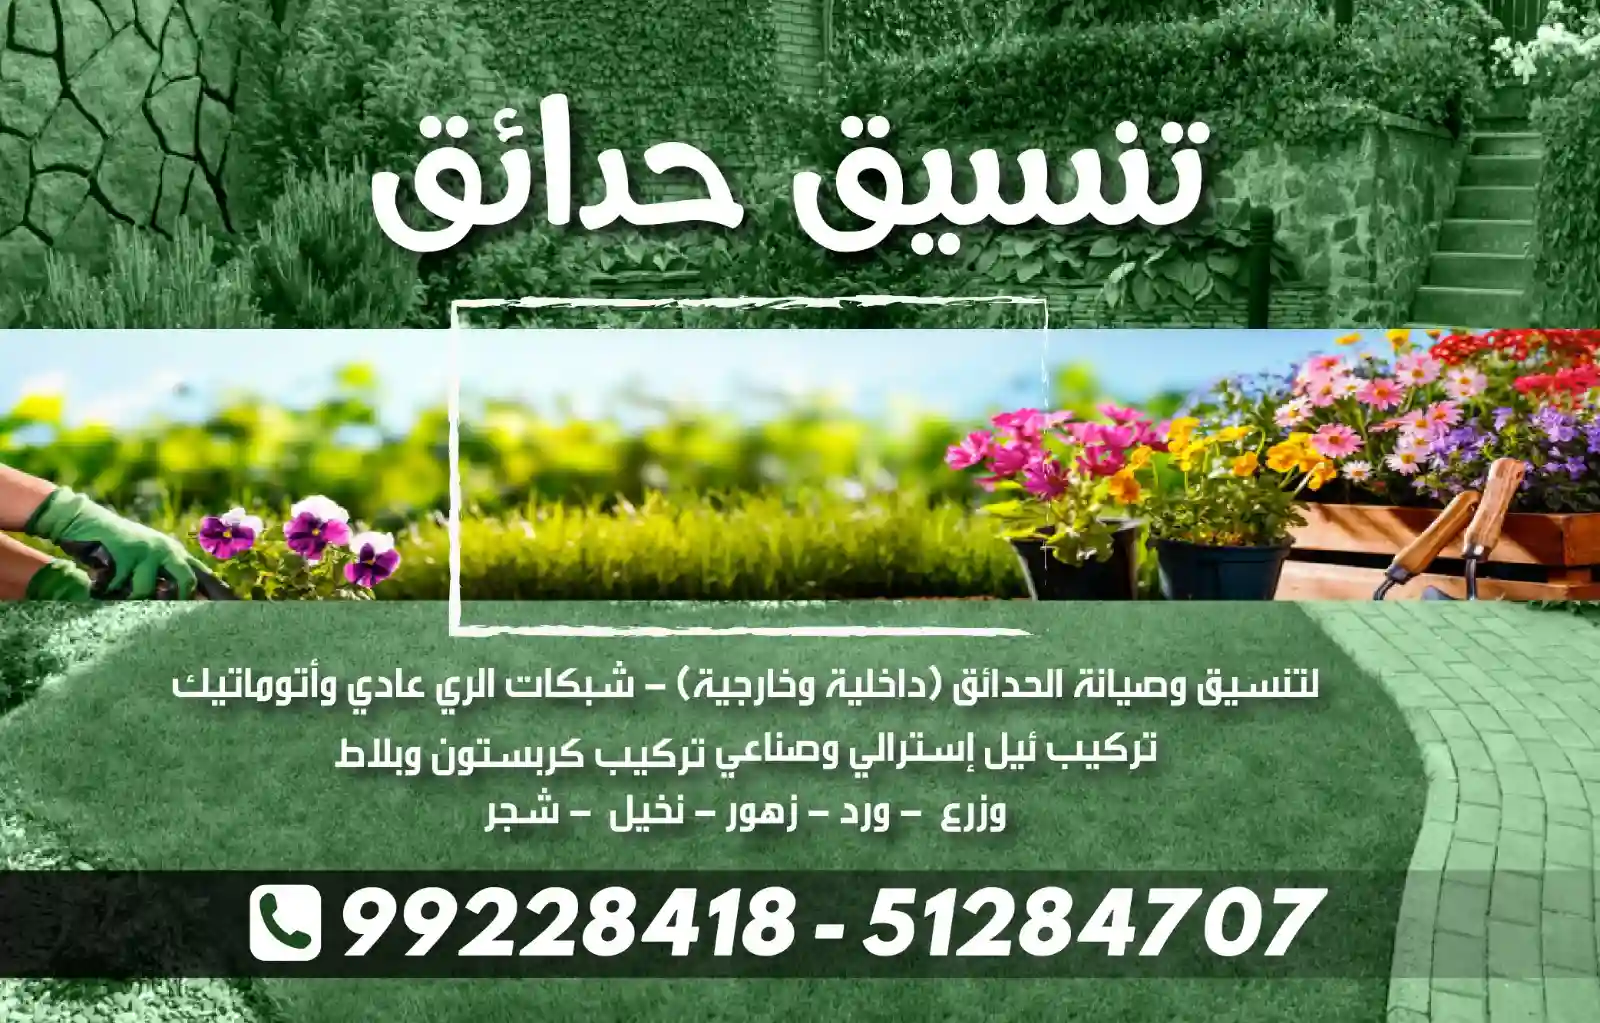 خدمة تنسيق الحدائق في الكويت | تنظيم وتصميم حدائق رائعة لعملائنا"